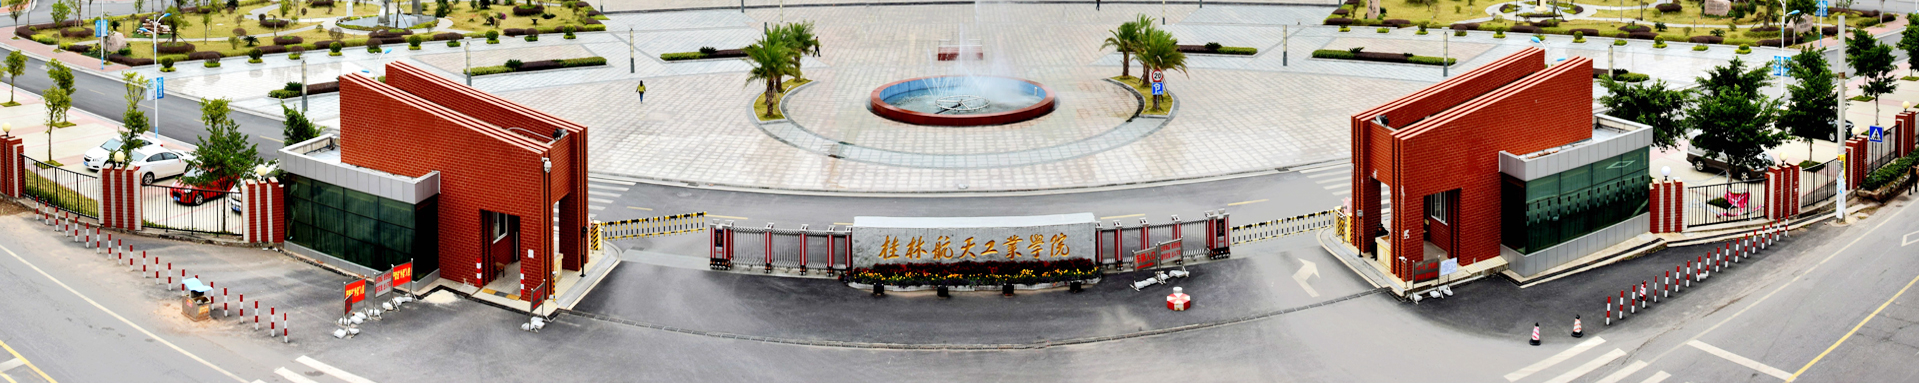 桂林航天工業學院正門